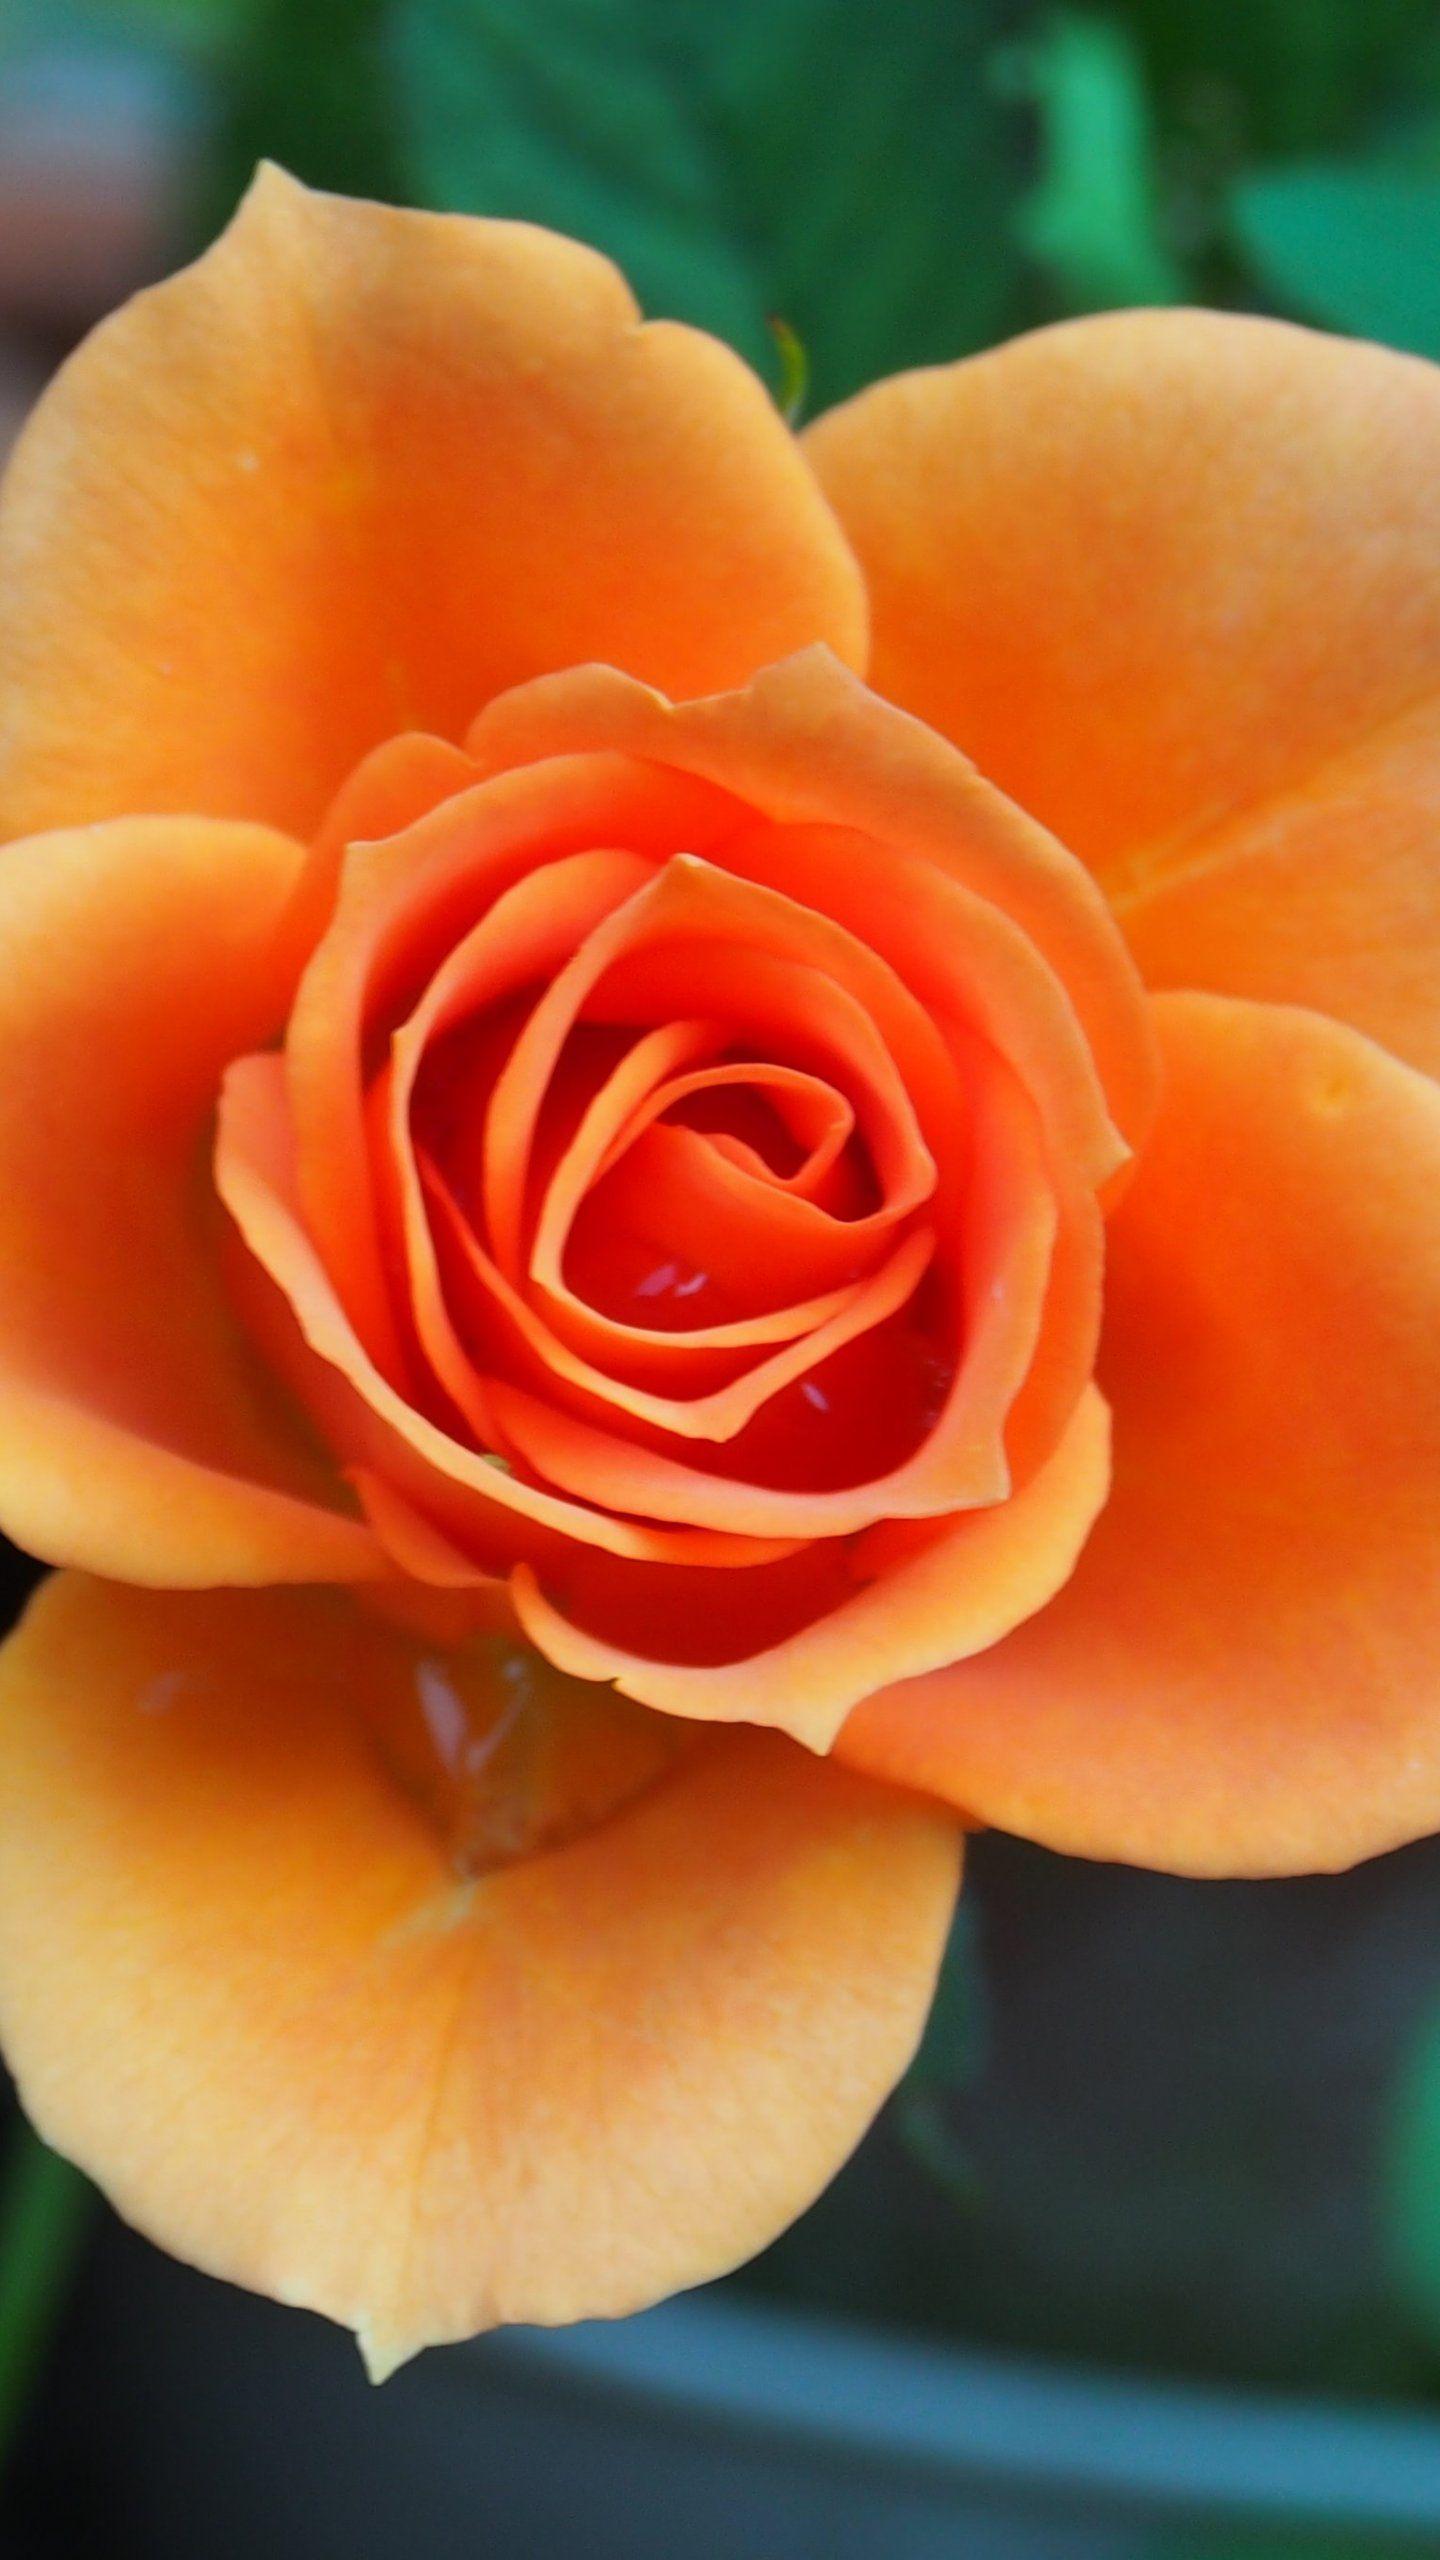 Orange Rose iPhone Wallpapers Top Free Orange Rose